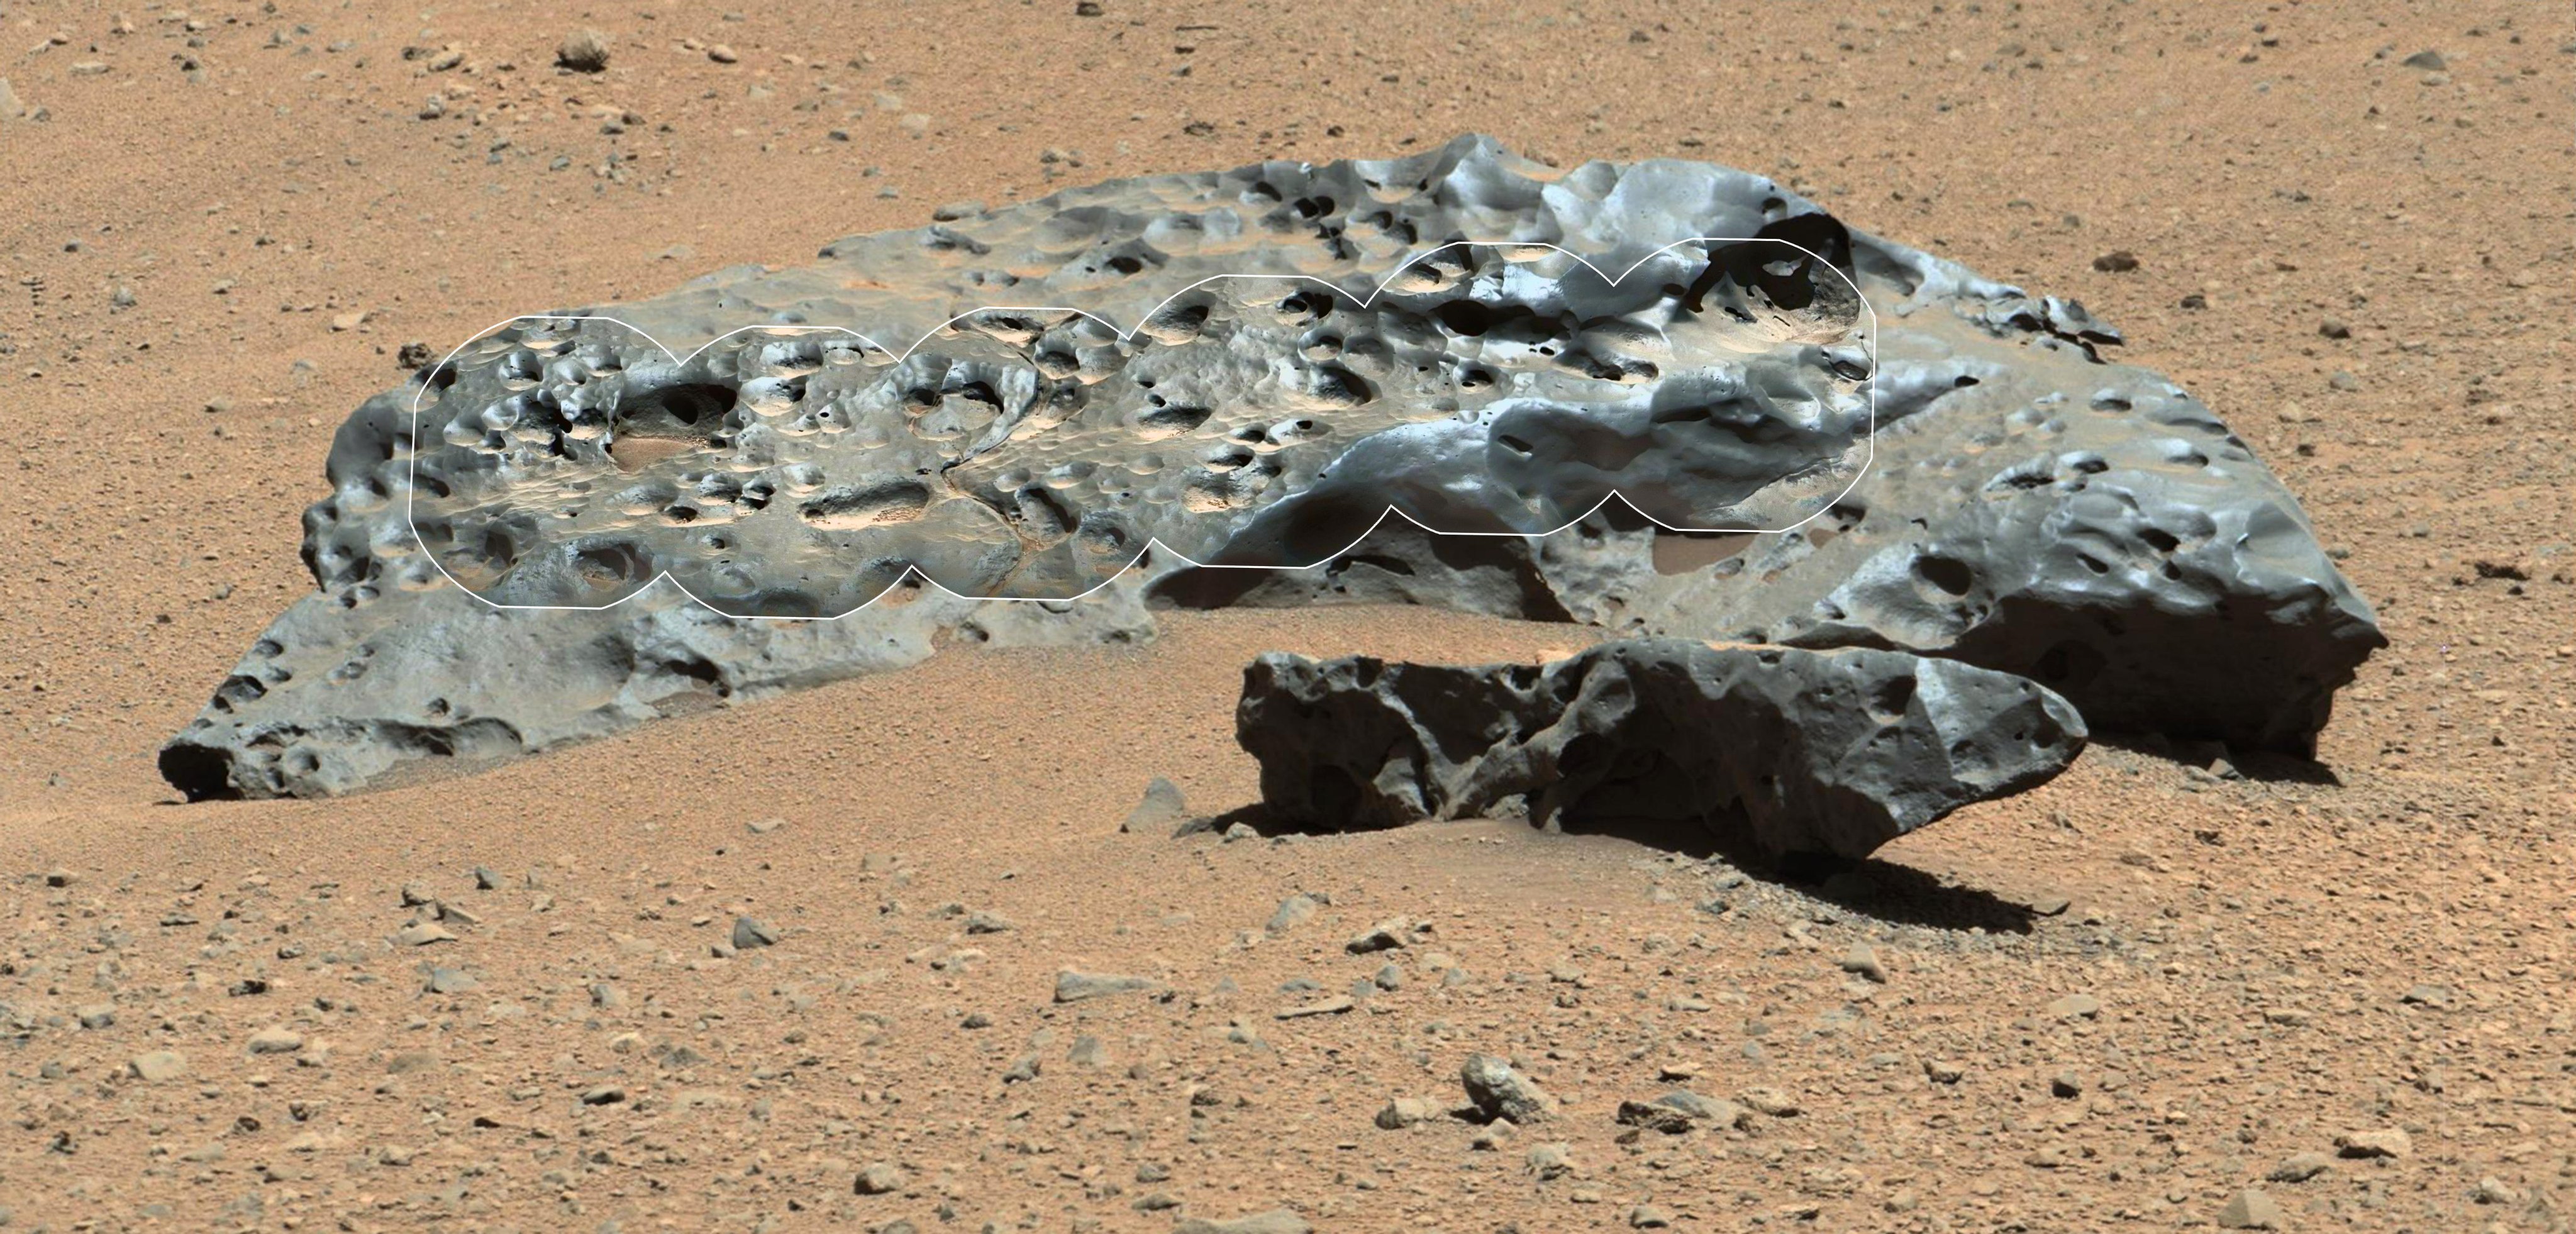 Curiosity-Rover findet außerirdischen Kakao auf dem Mars